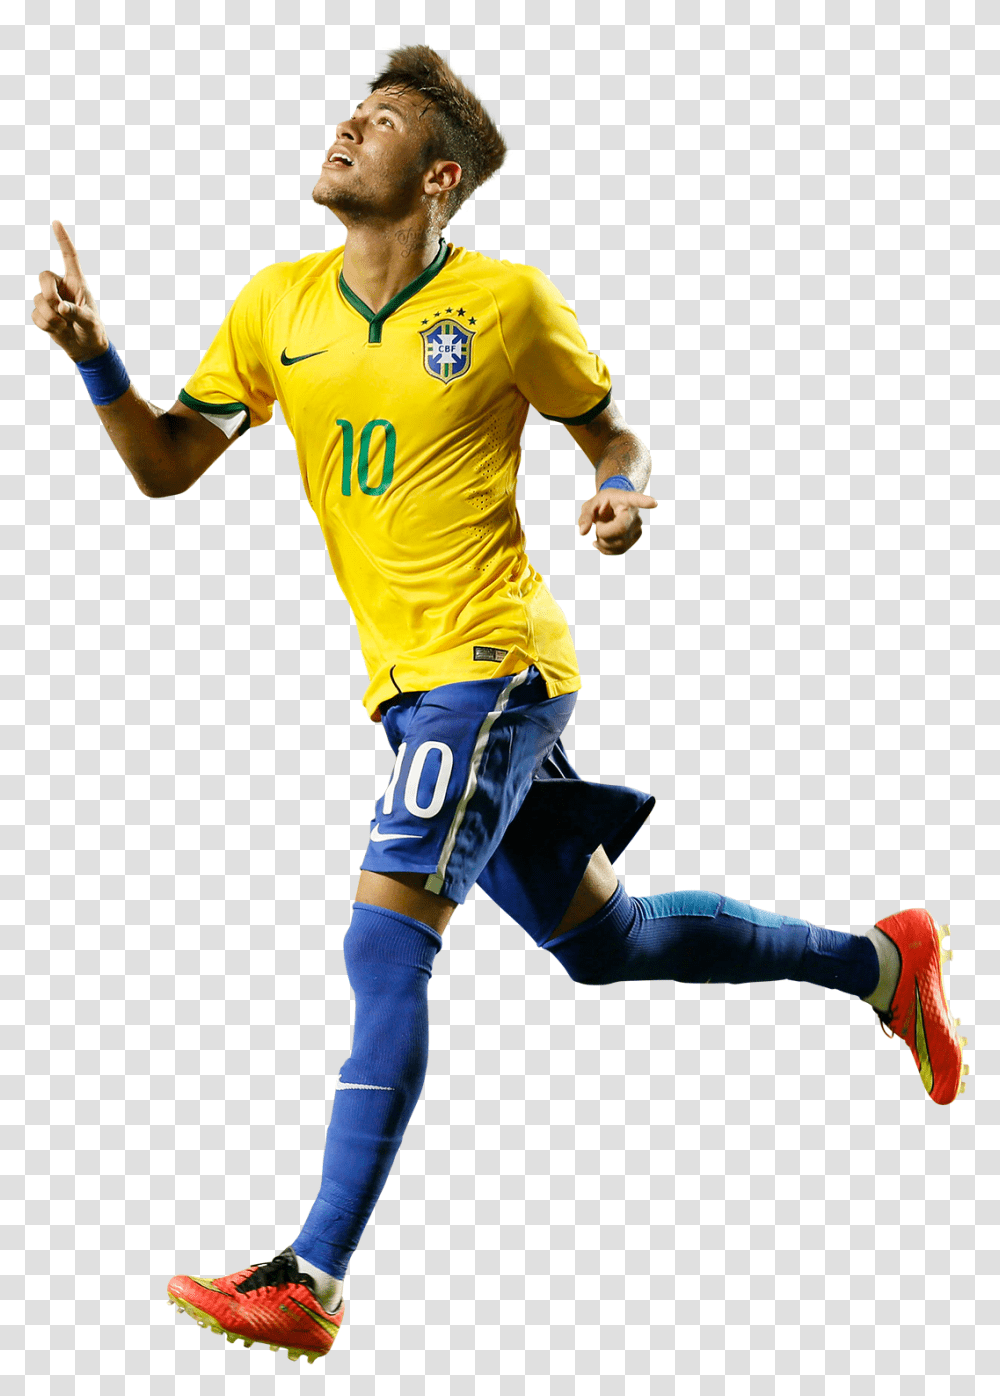 2018 World Cup Neymar Background Footyrenders Neymar 2018, Person, Human, People, Sphere Transparent Png